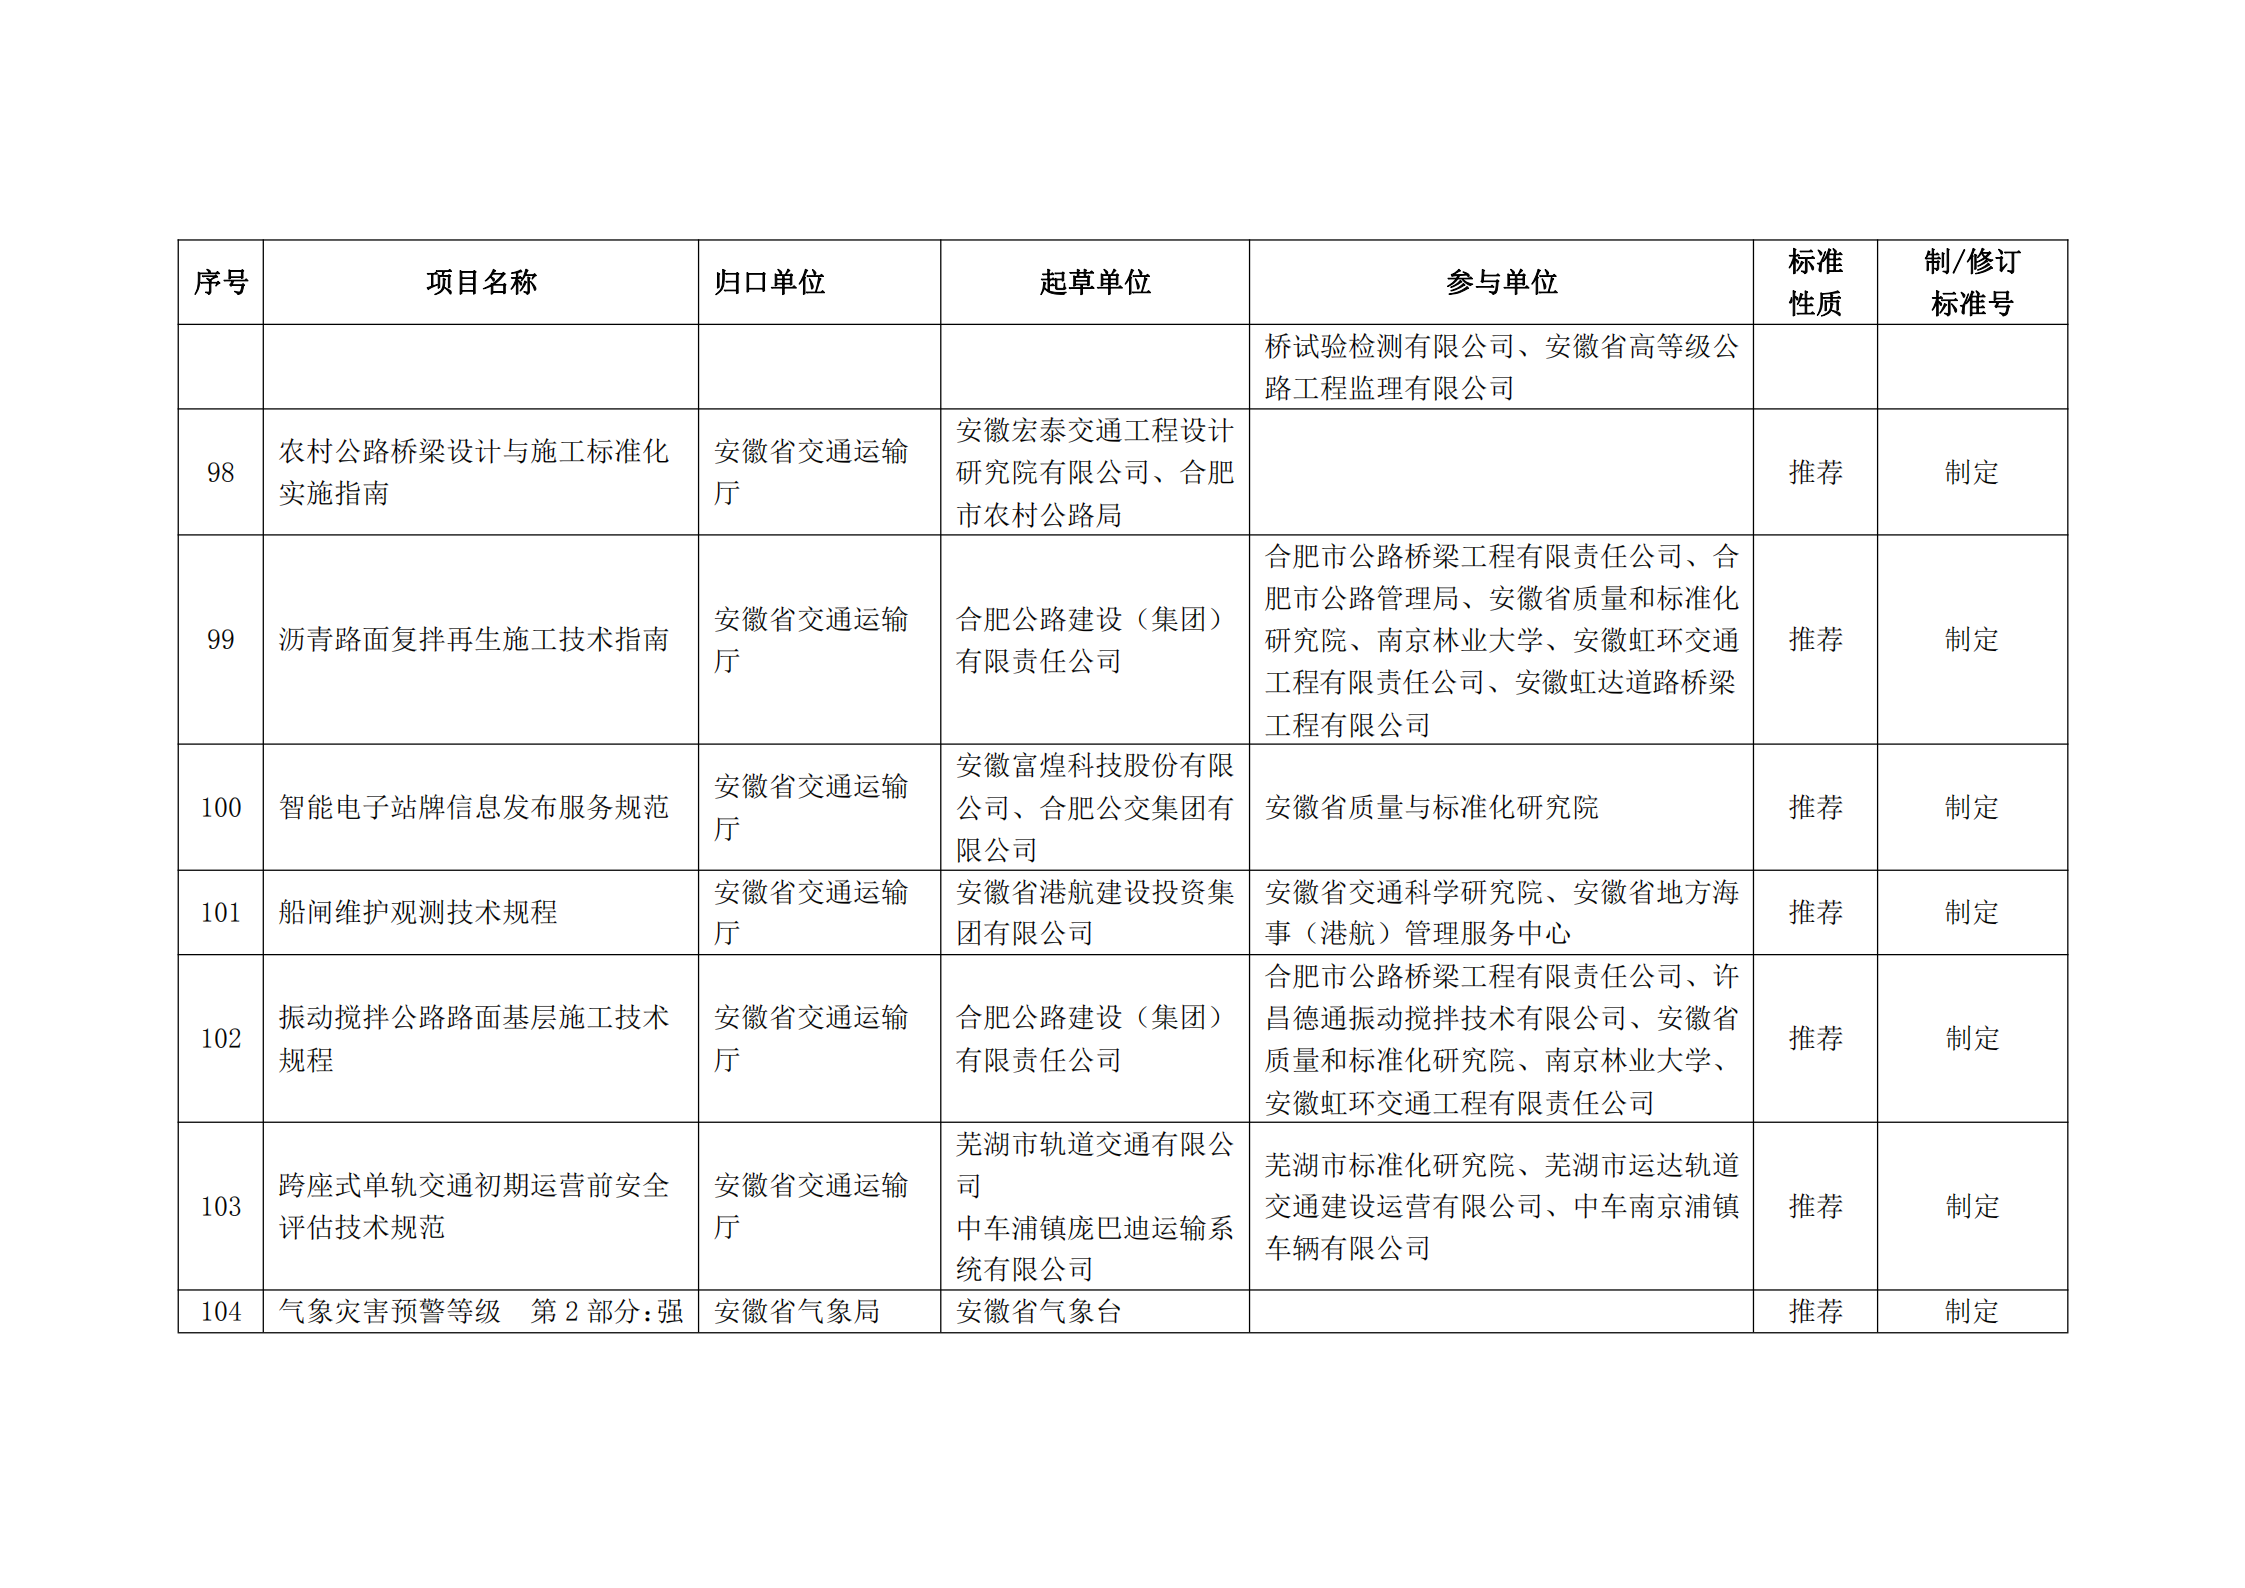 2020 年第二批安徽省地方标准制、修订计划项目汇总表(图11)